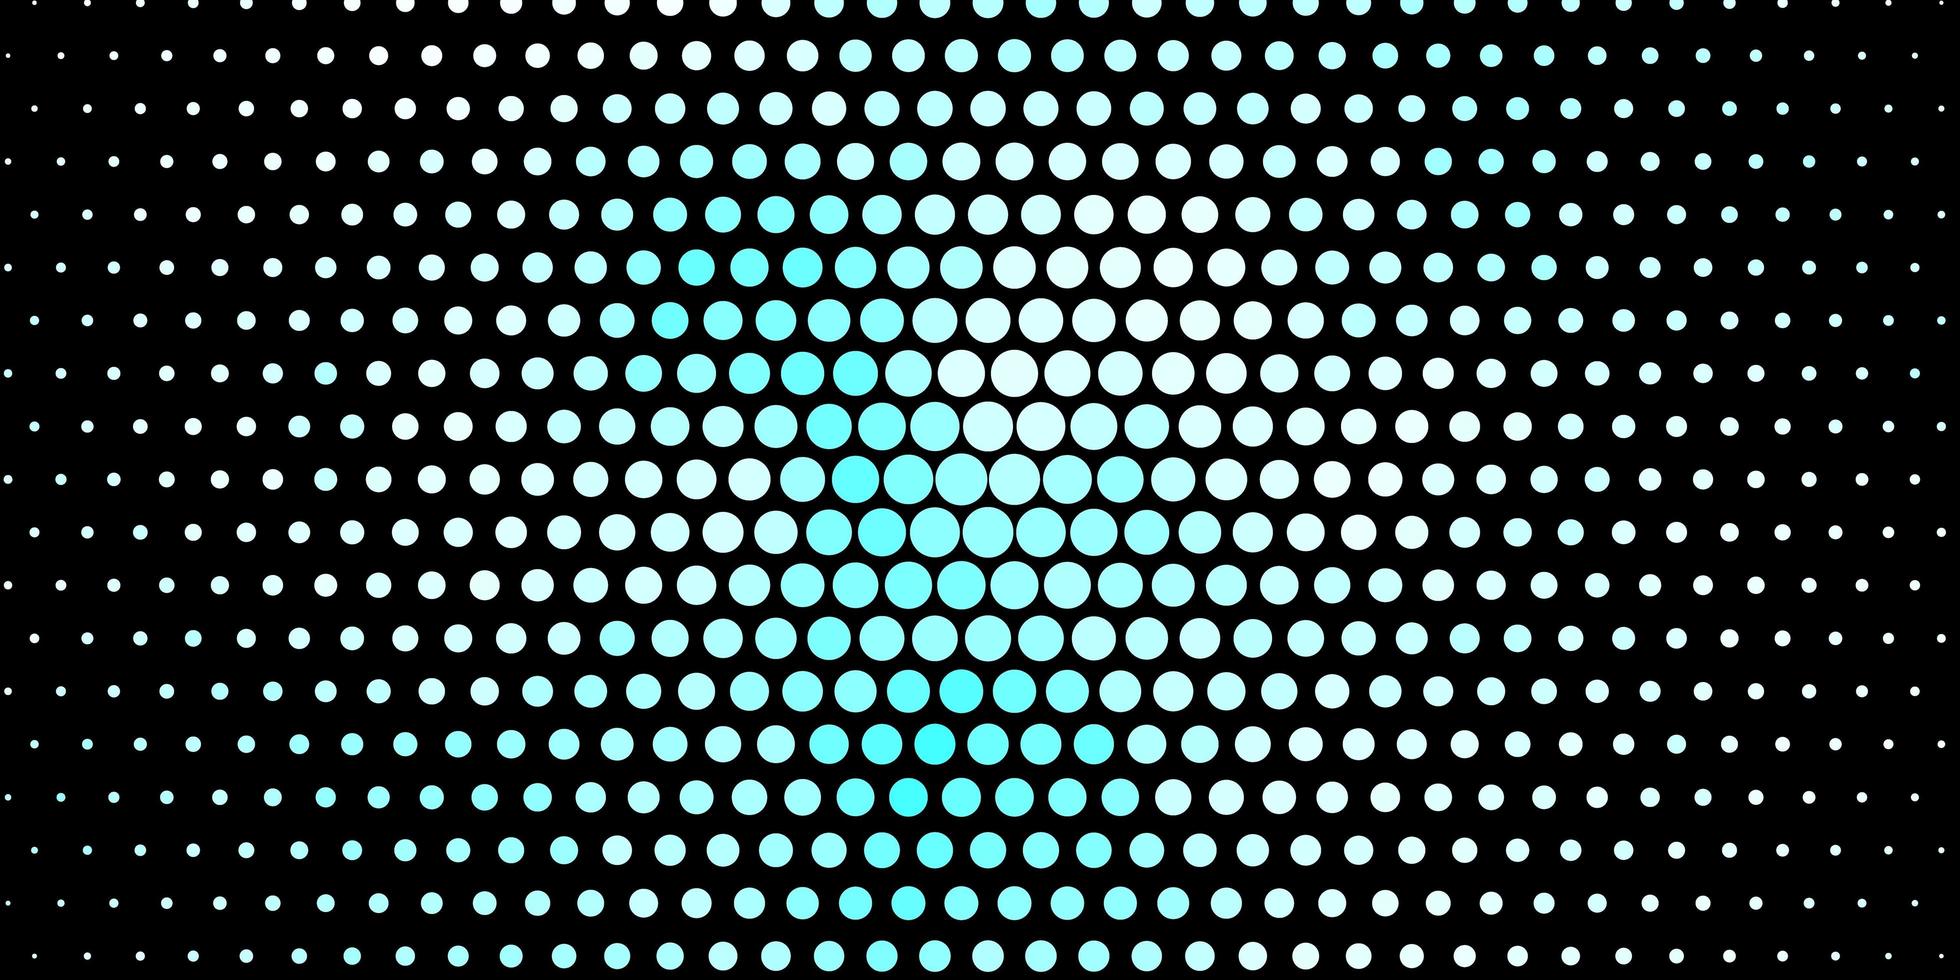 patrón de vector azul oscuro con círculos.